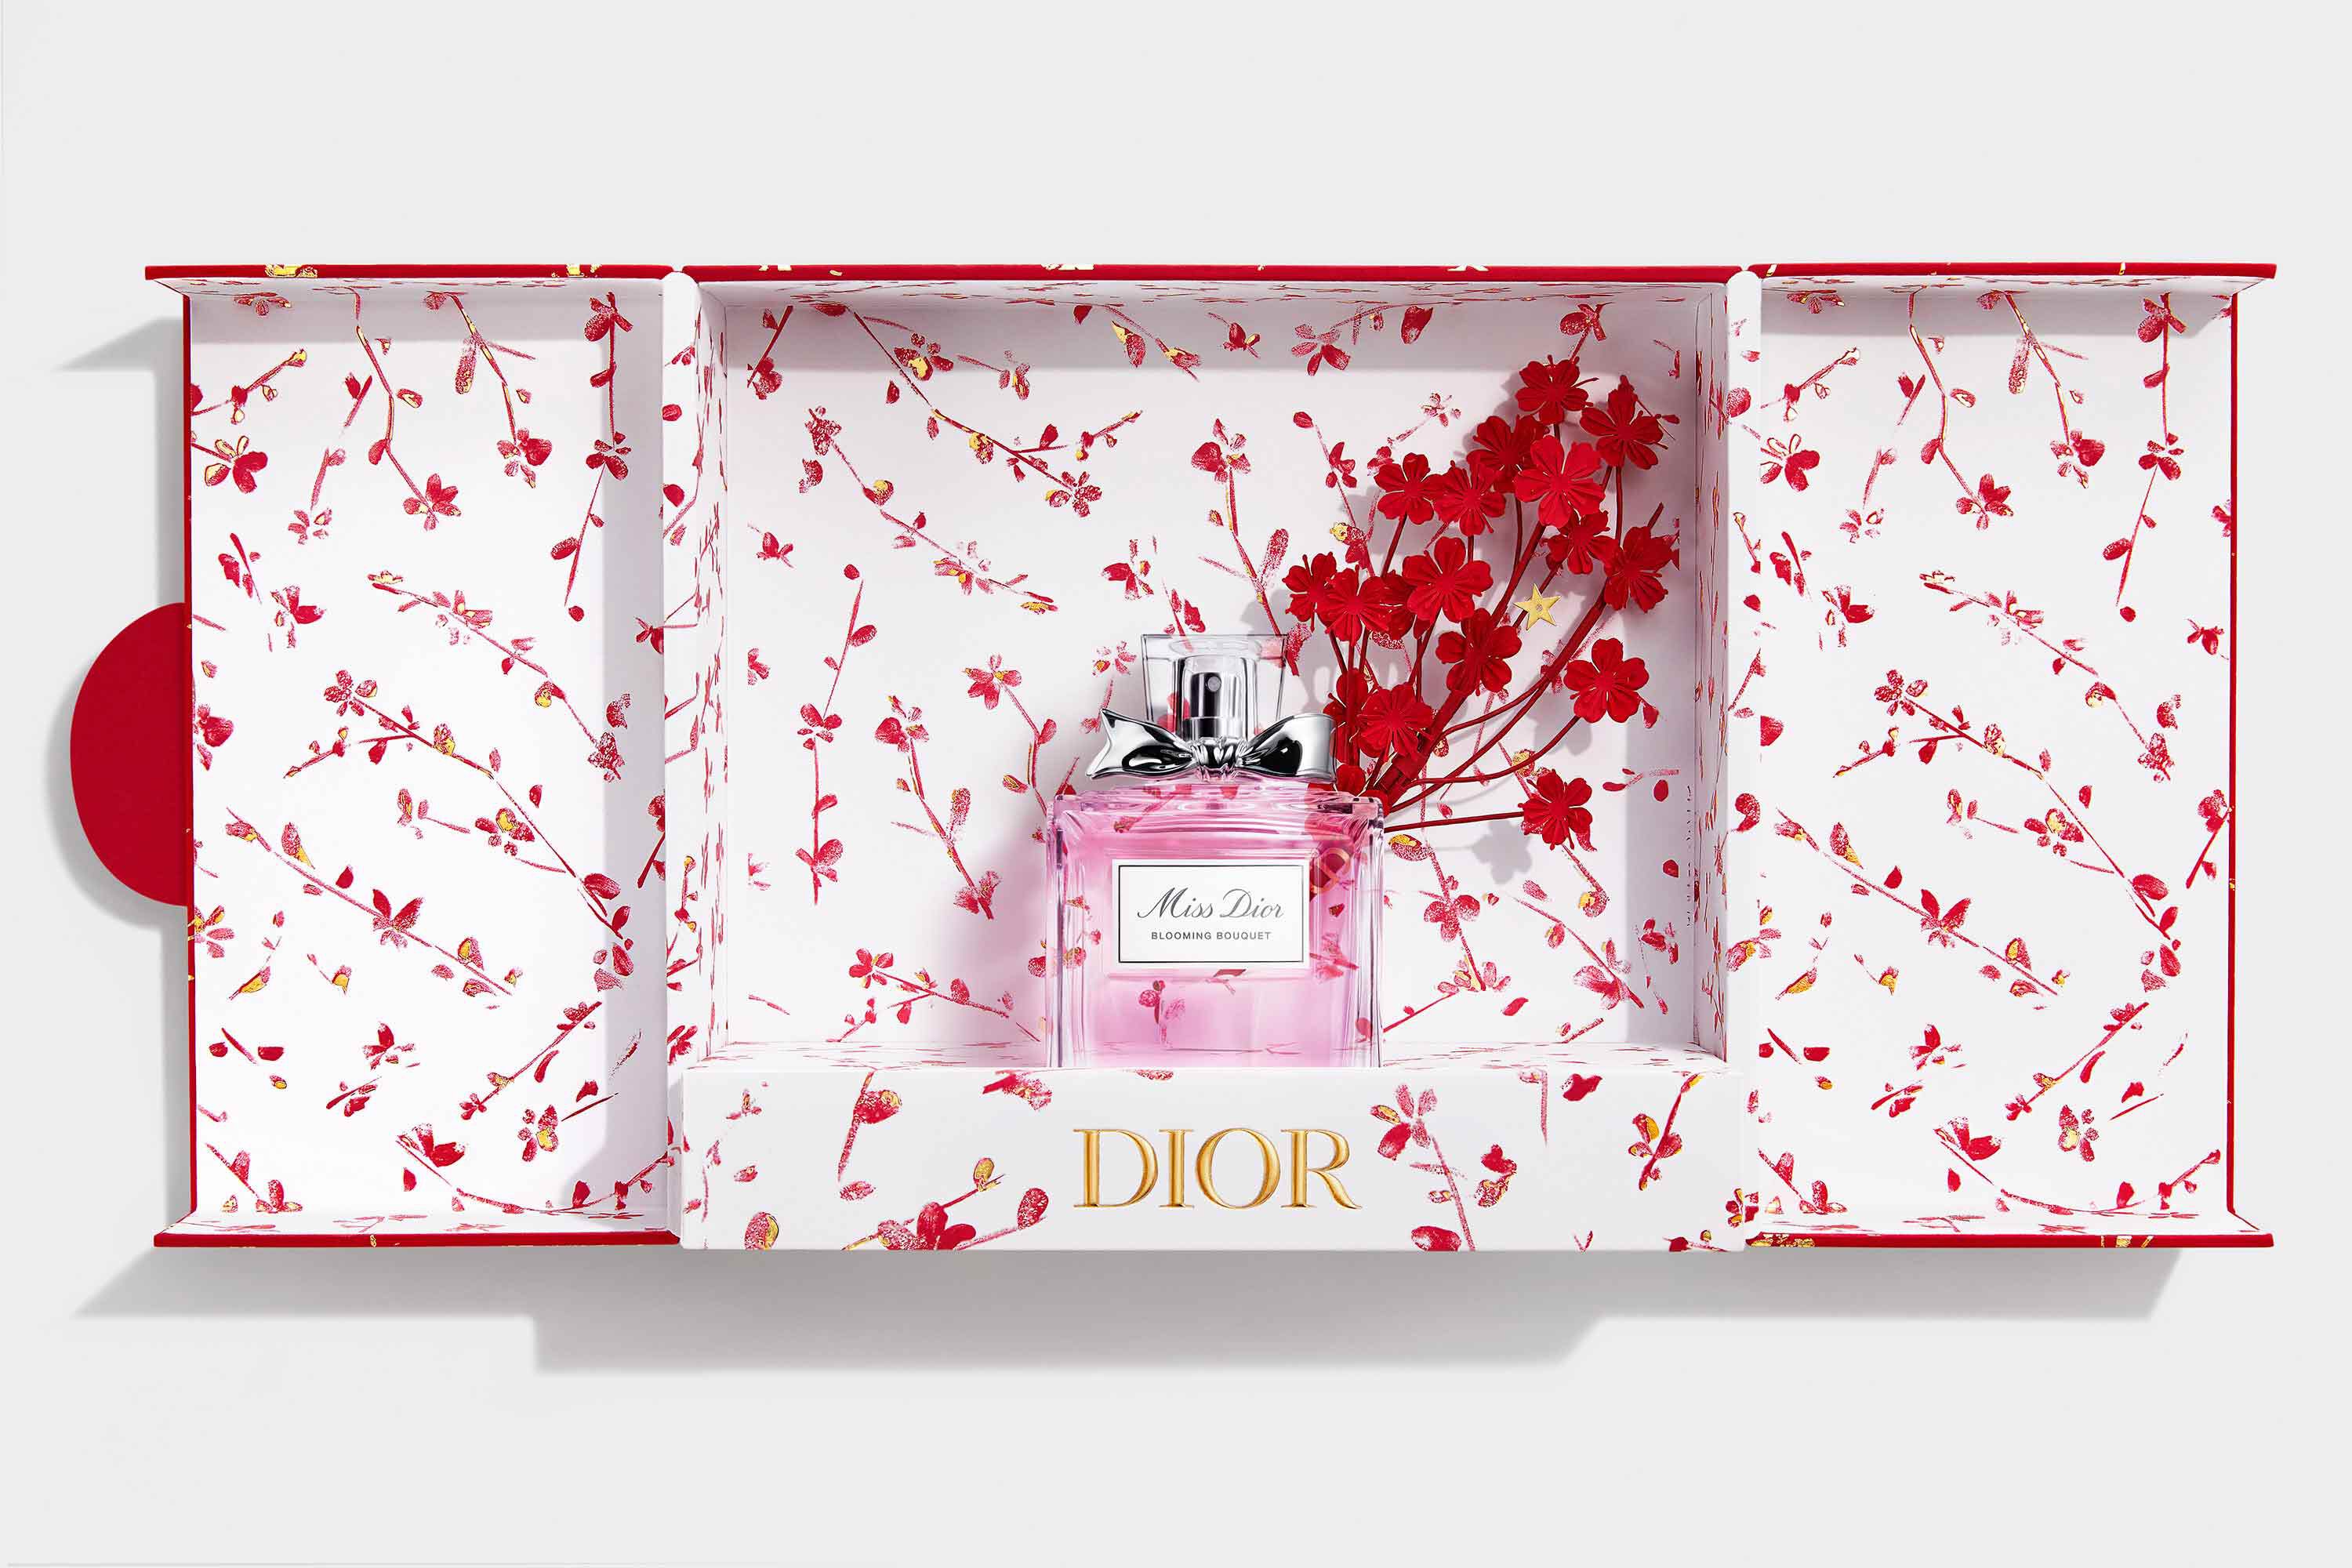 overspringen Beperkingen formeel 2021 Lunar New Year: Miss Dior Blooming Bouquet Set | DIOR